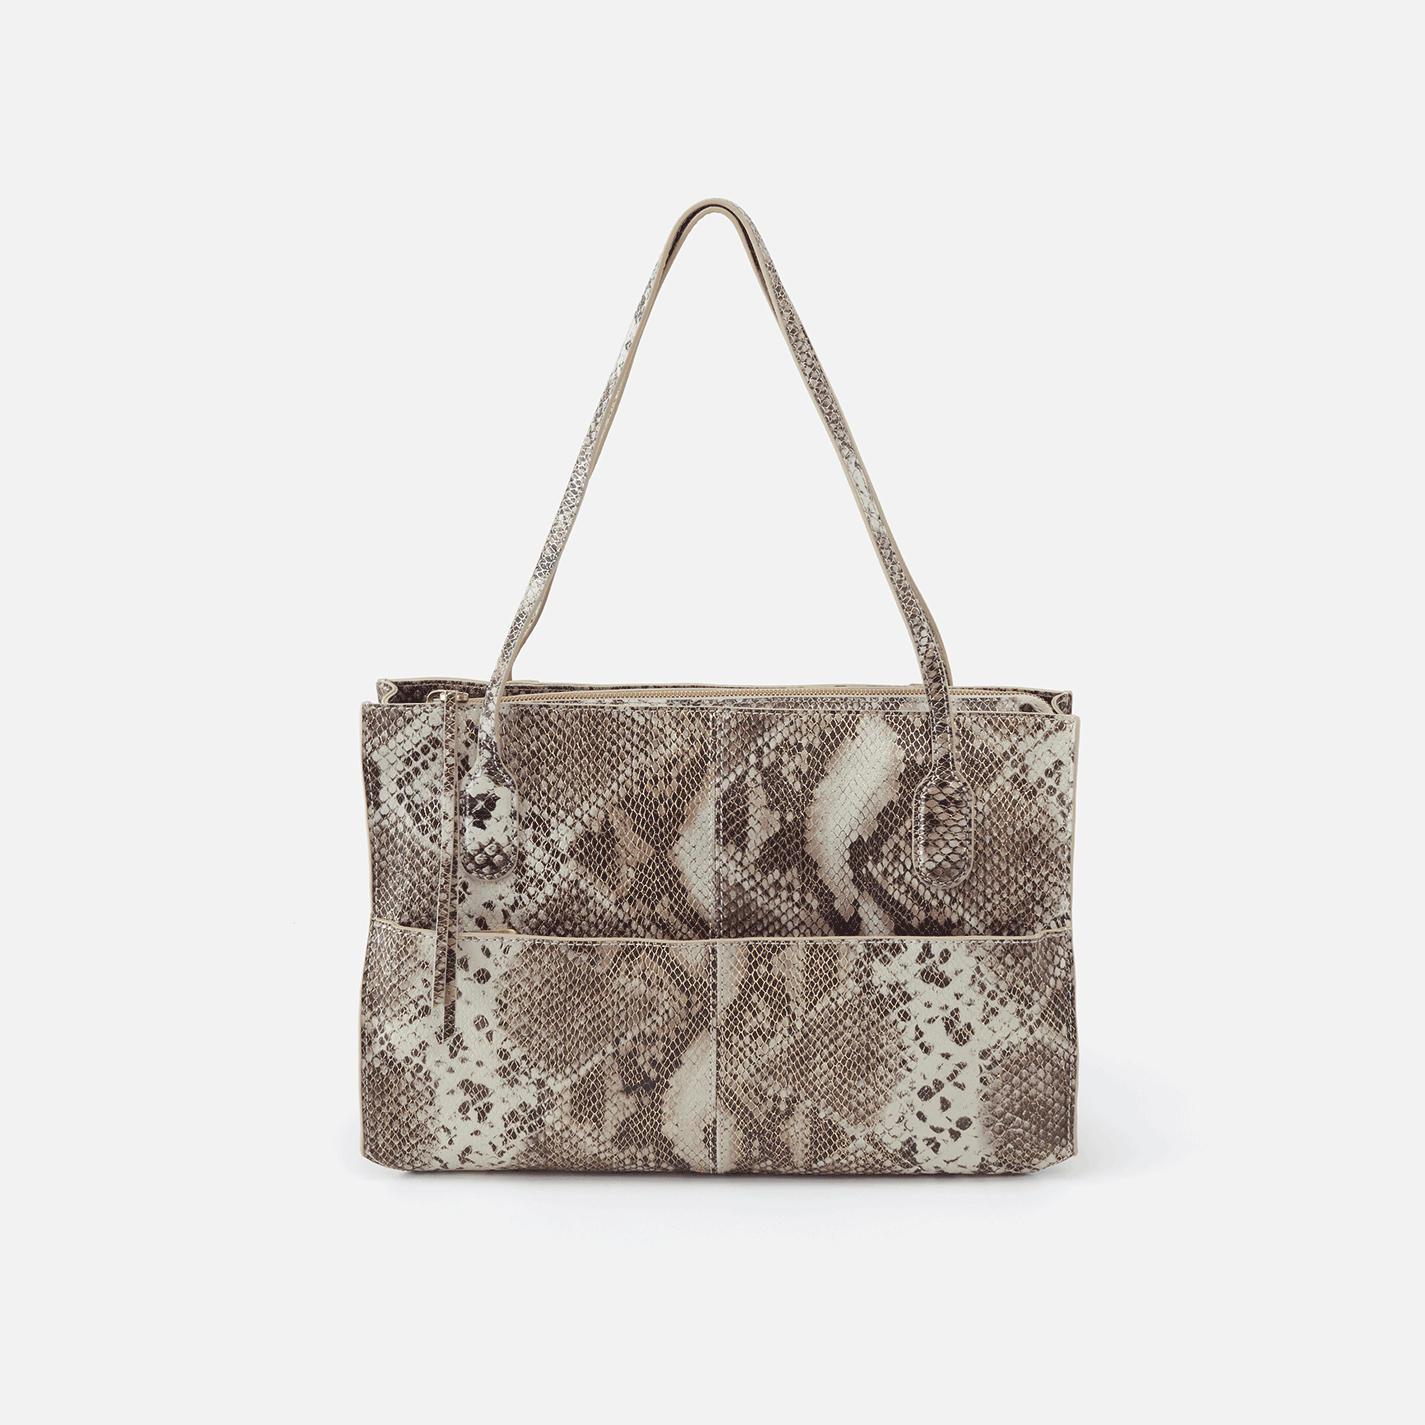 shimmer handbags price